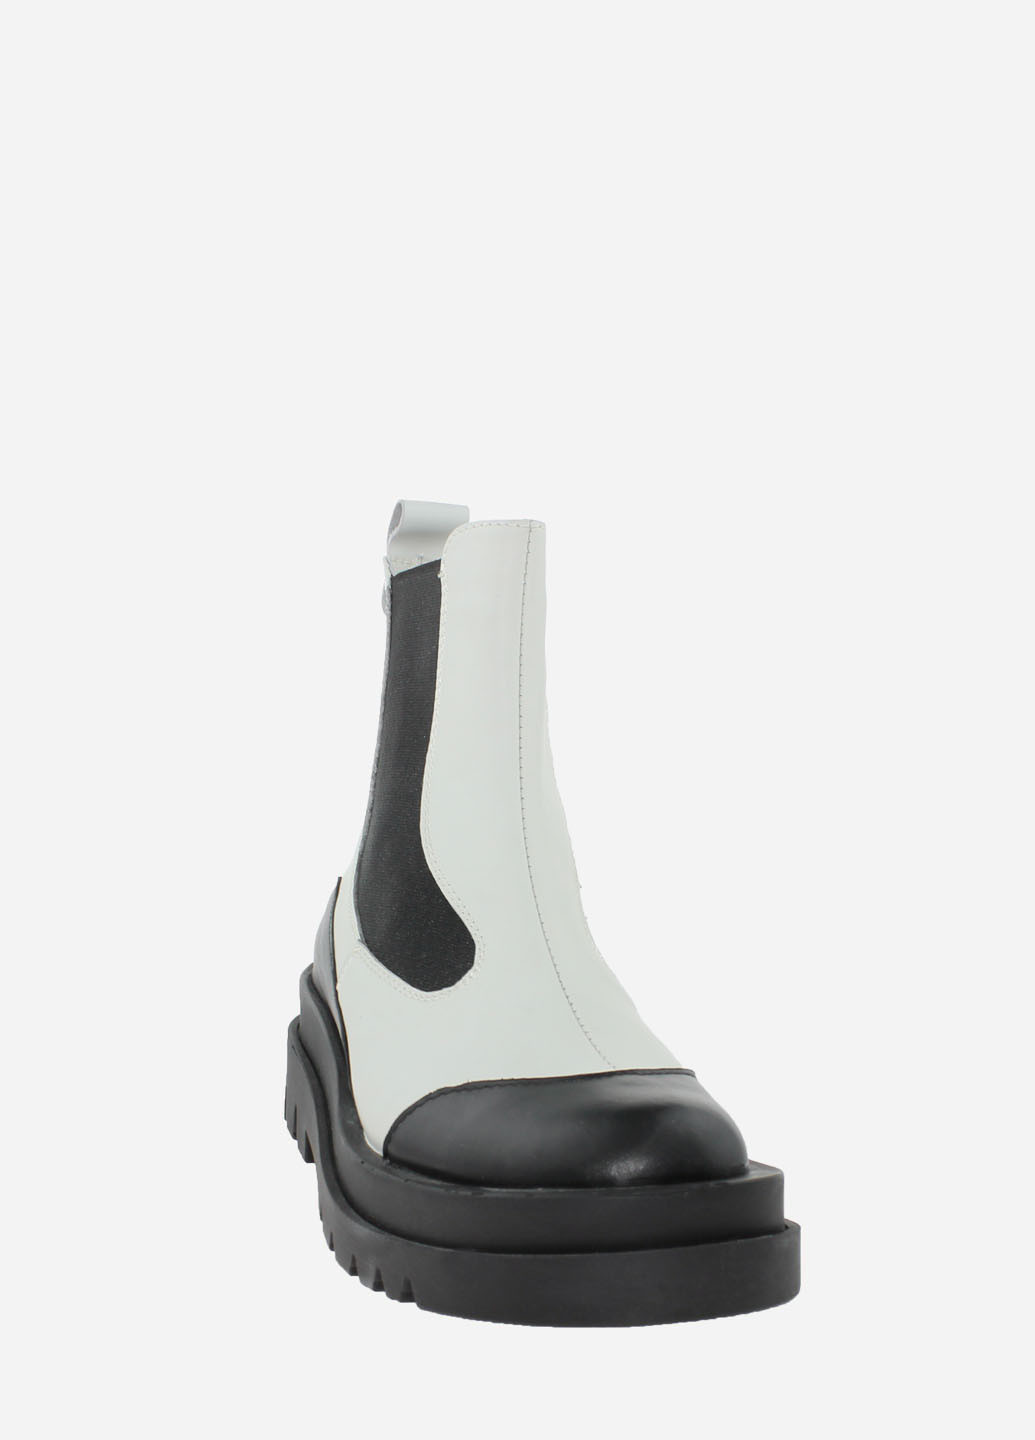 Осенние ботинки rs07232 серый-черный Saurini